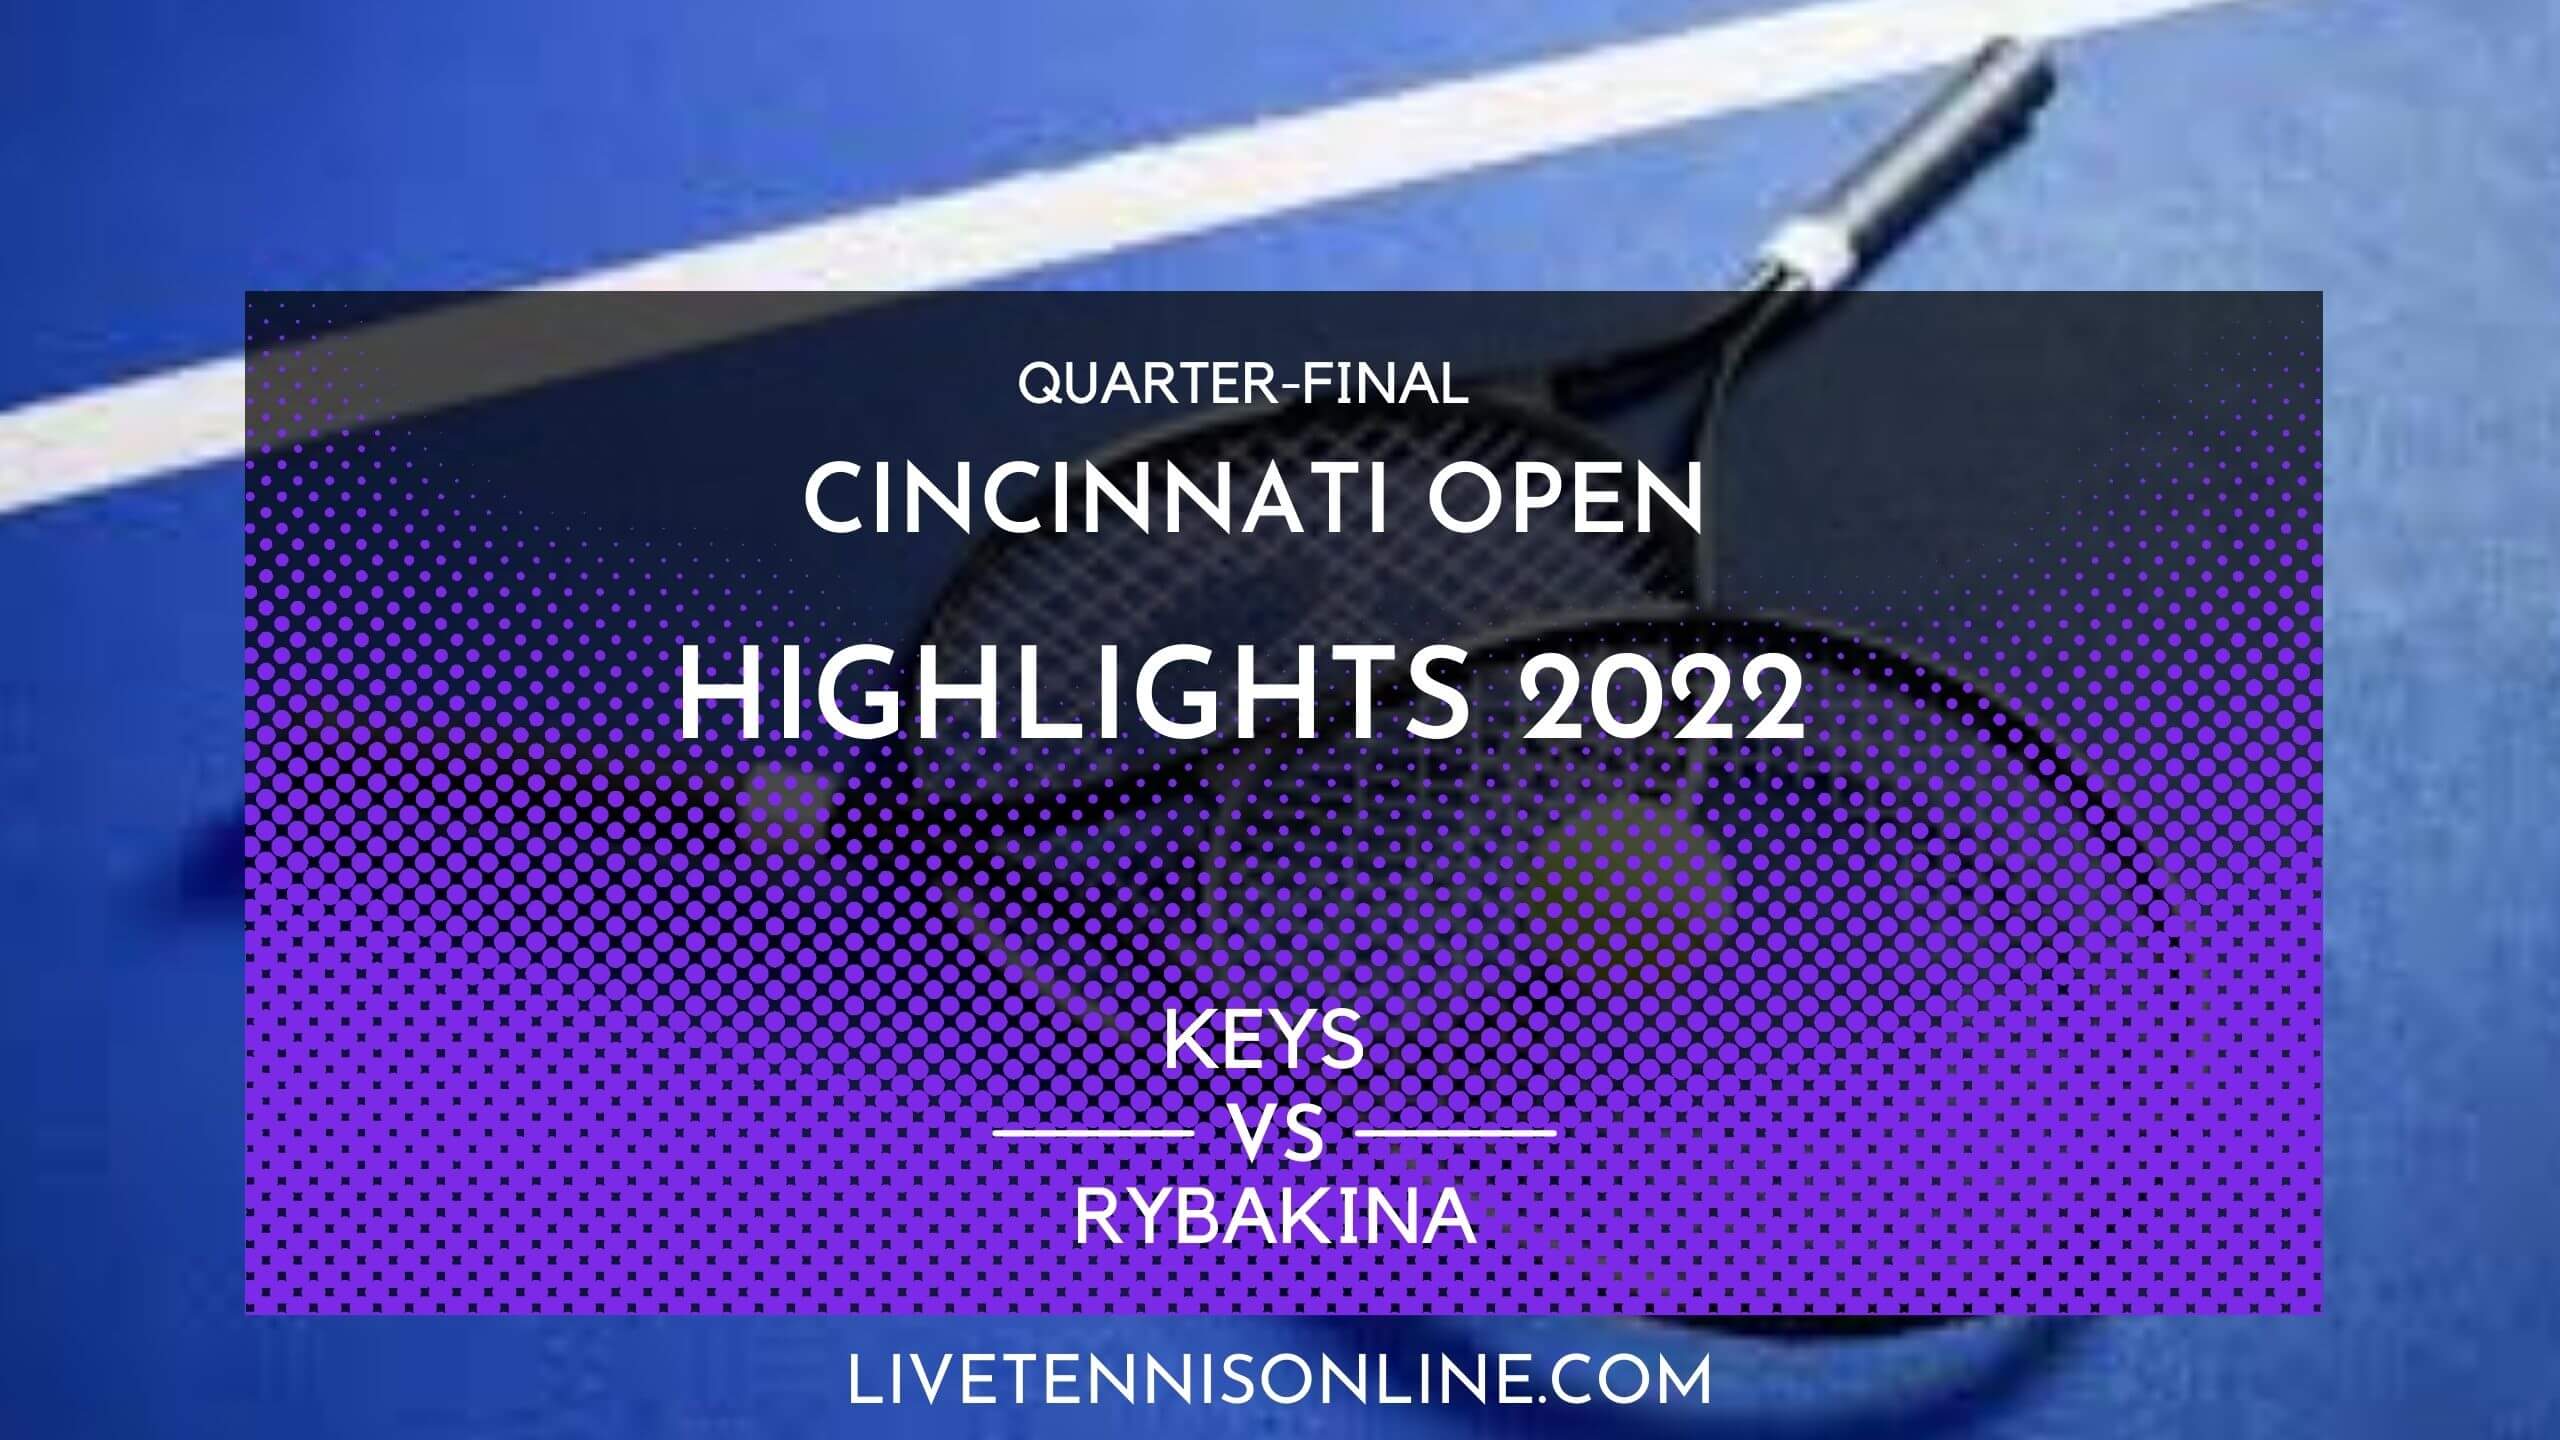 Keys Vs Rybakina QF Highlights 2022 Cincinnati Open